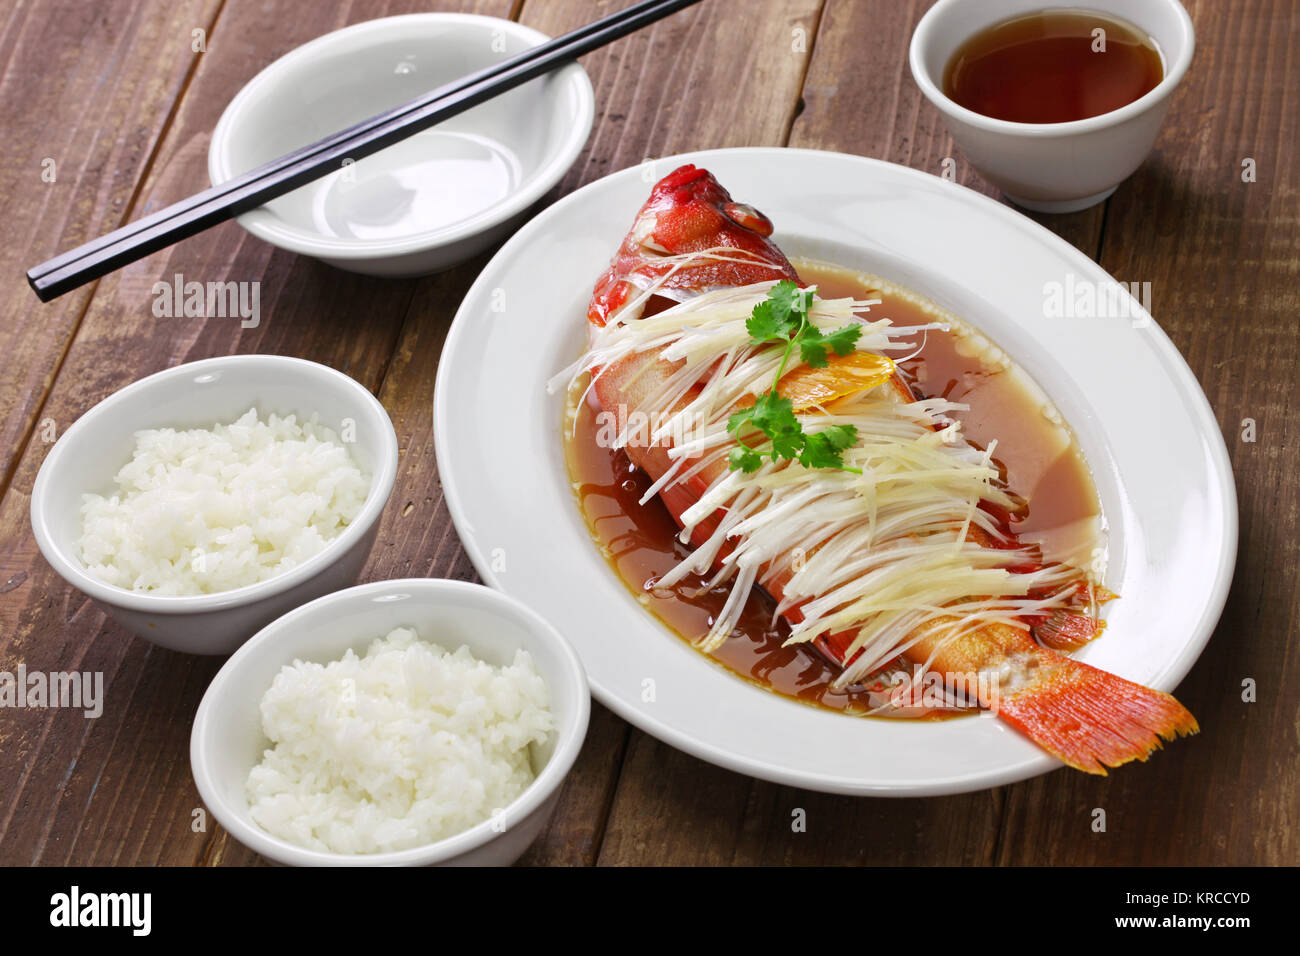 Mérou rouge cuit à la chinoise avec le gingembre, les échalotes et la sauce soja Banque D'Images